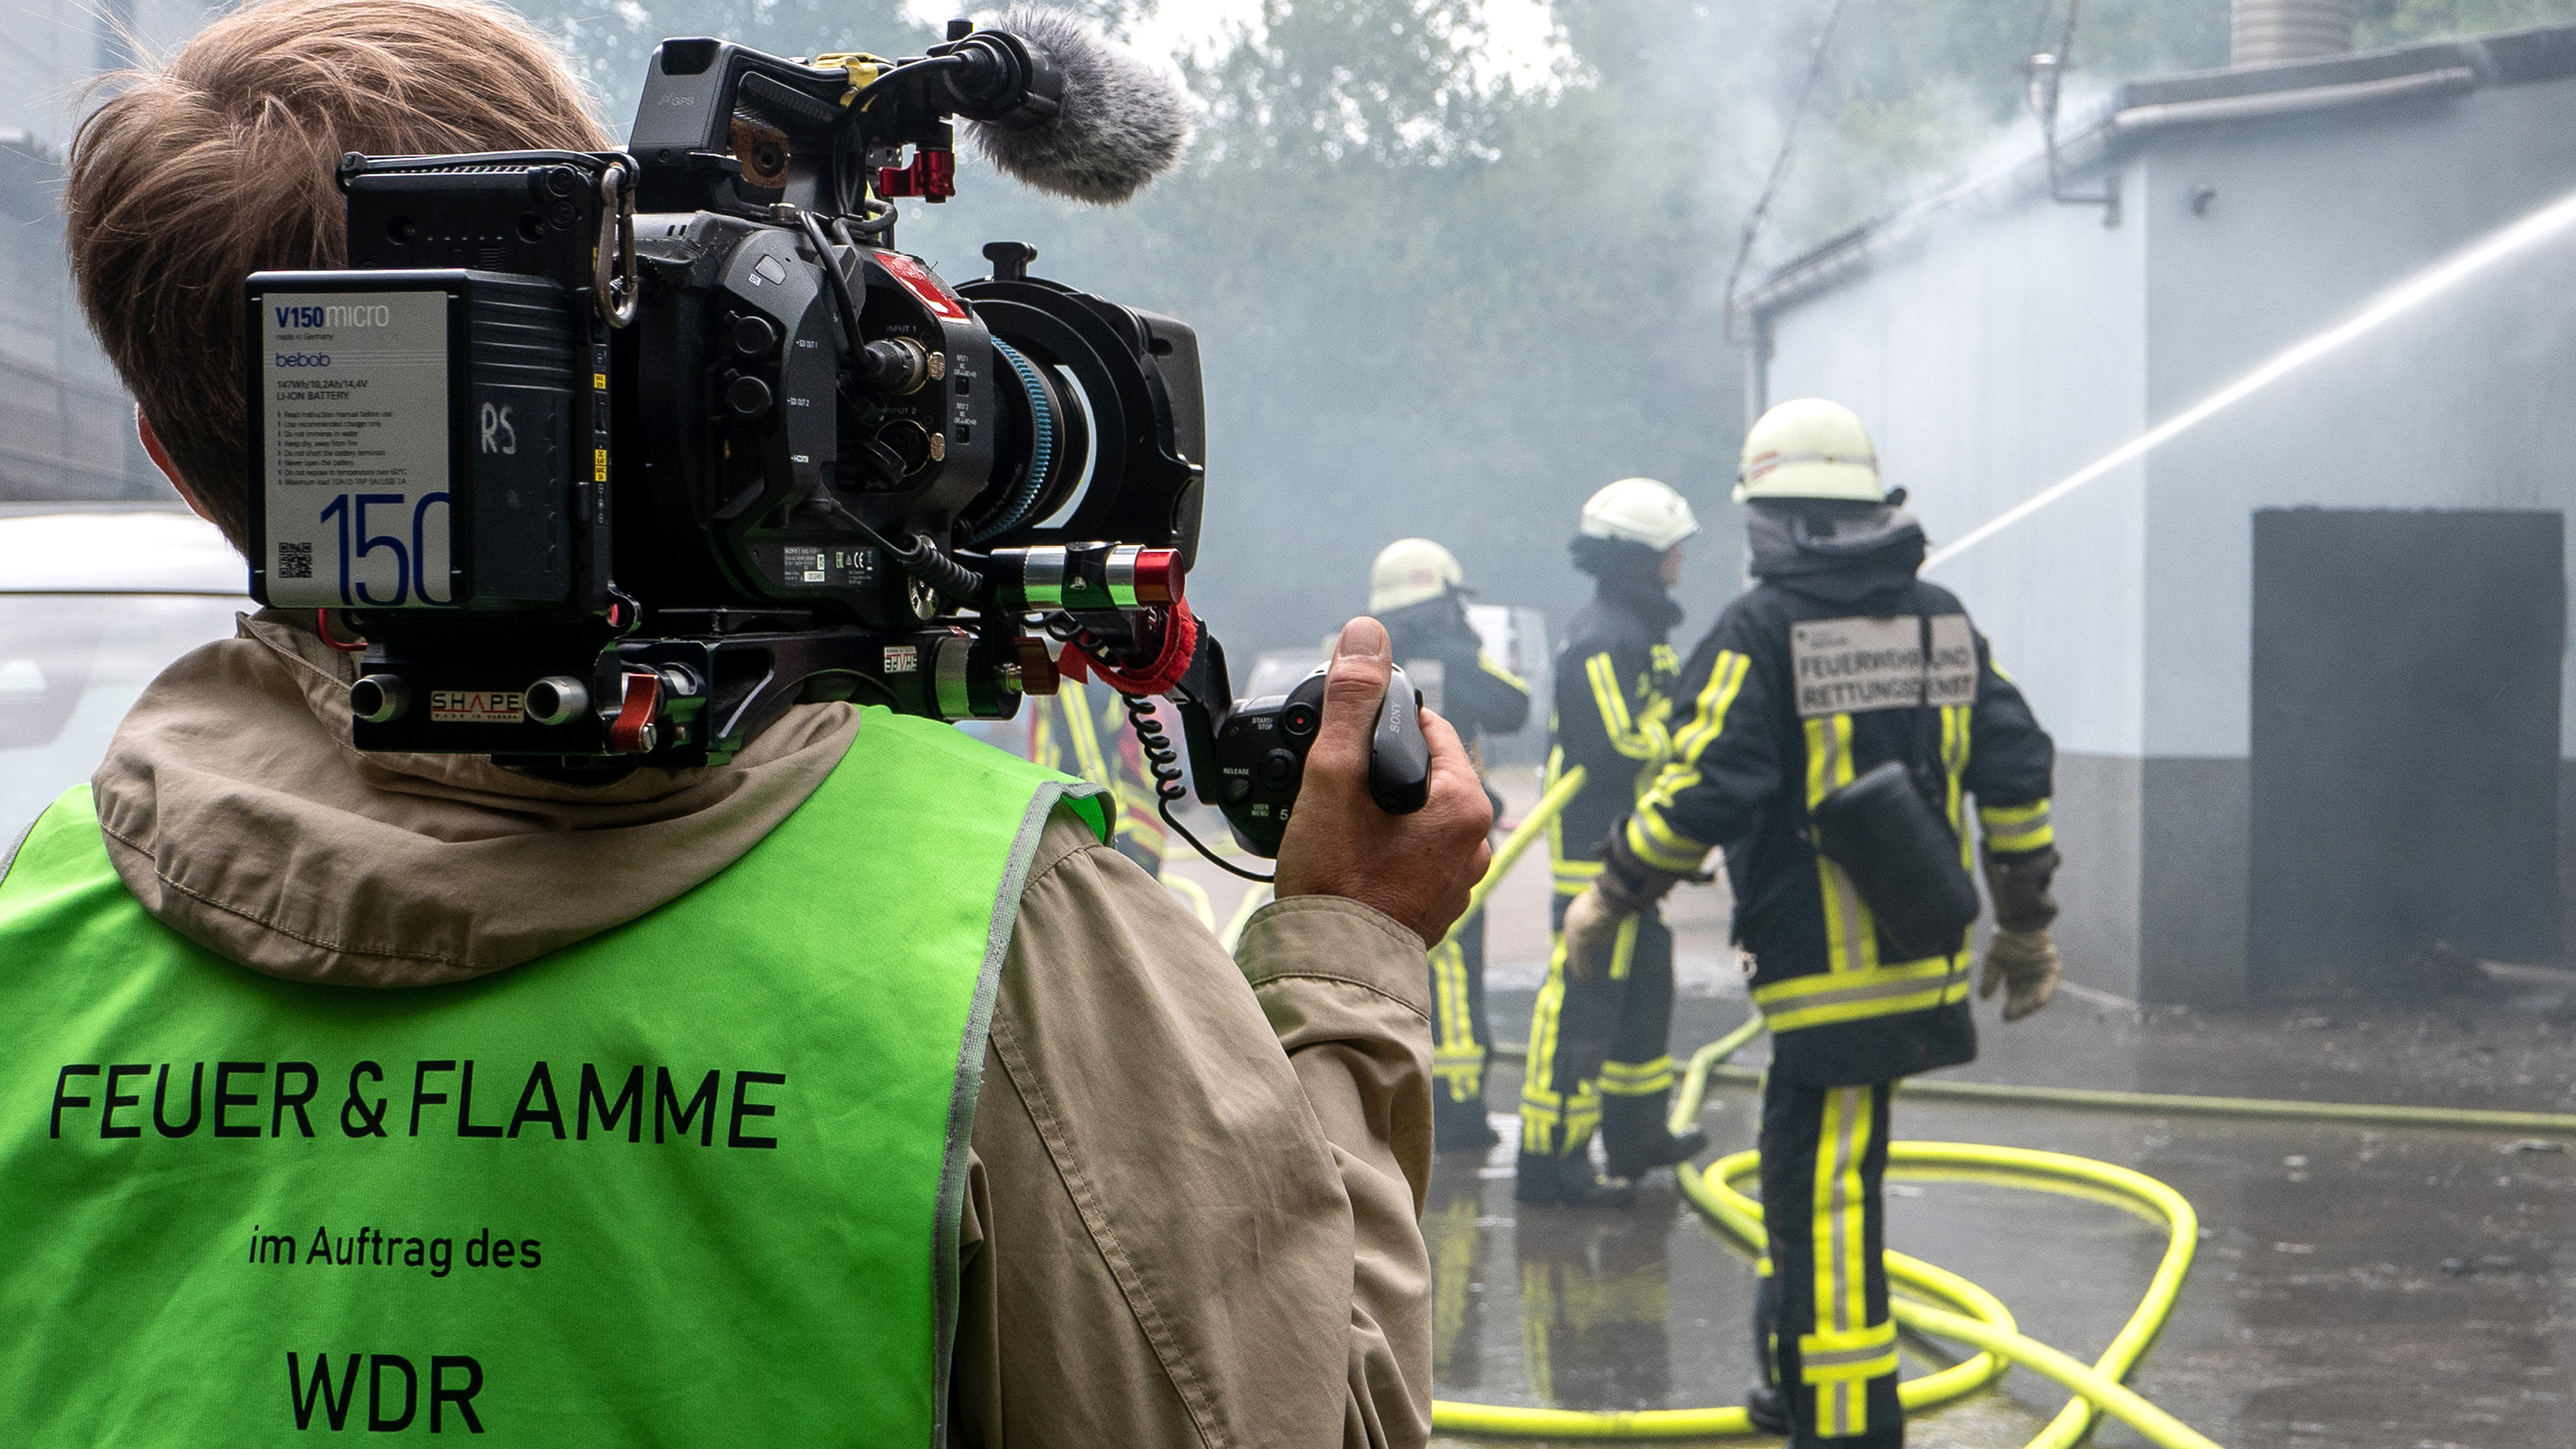 WDR-Kamerateam bei Dreharbeiten für WDR-Doku Feuer und Flamme